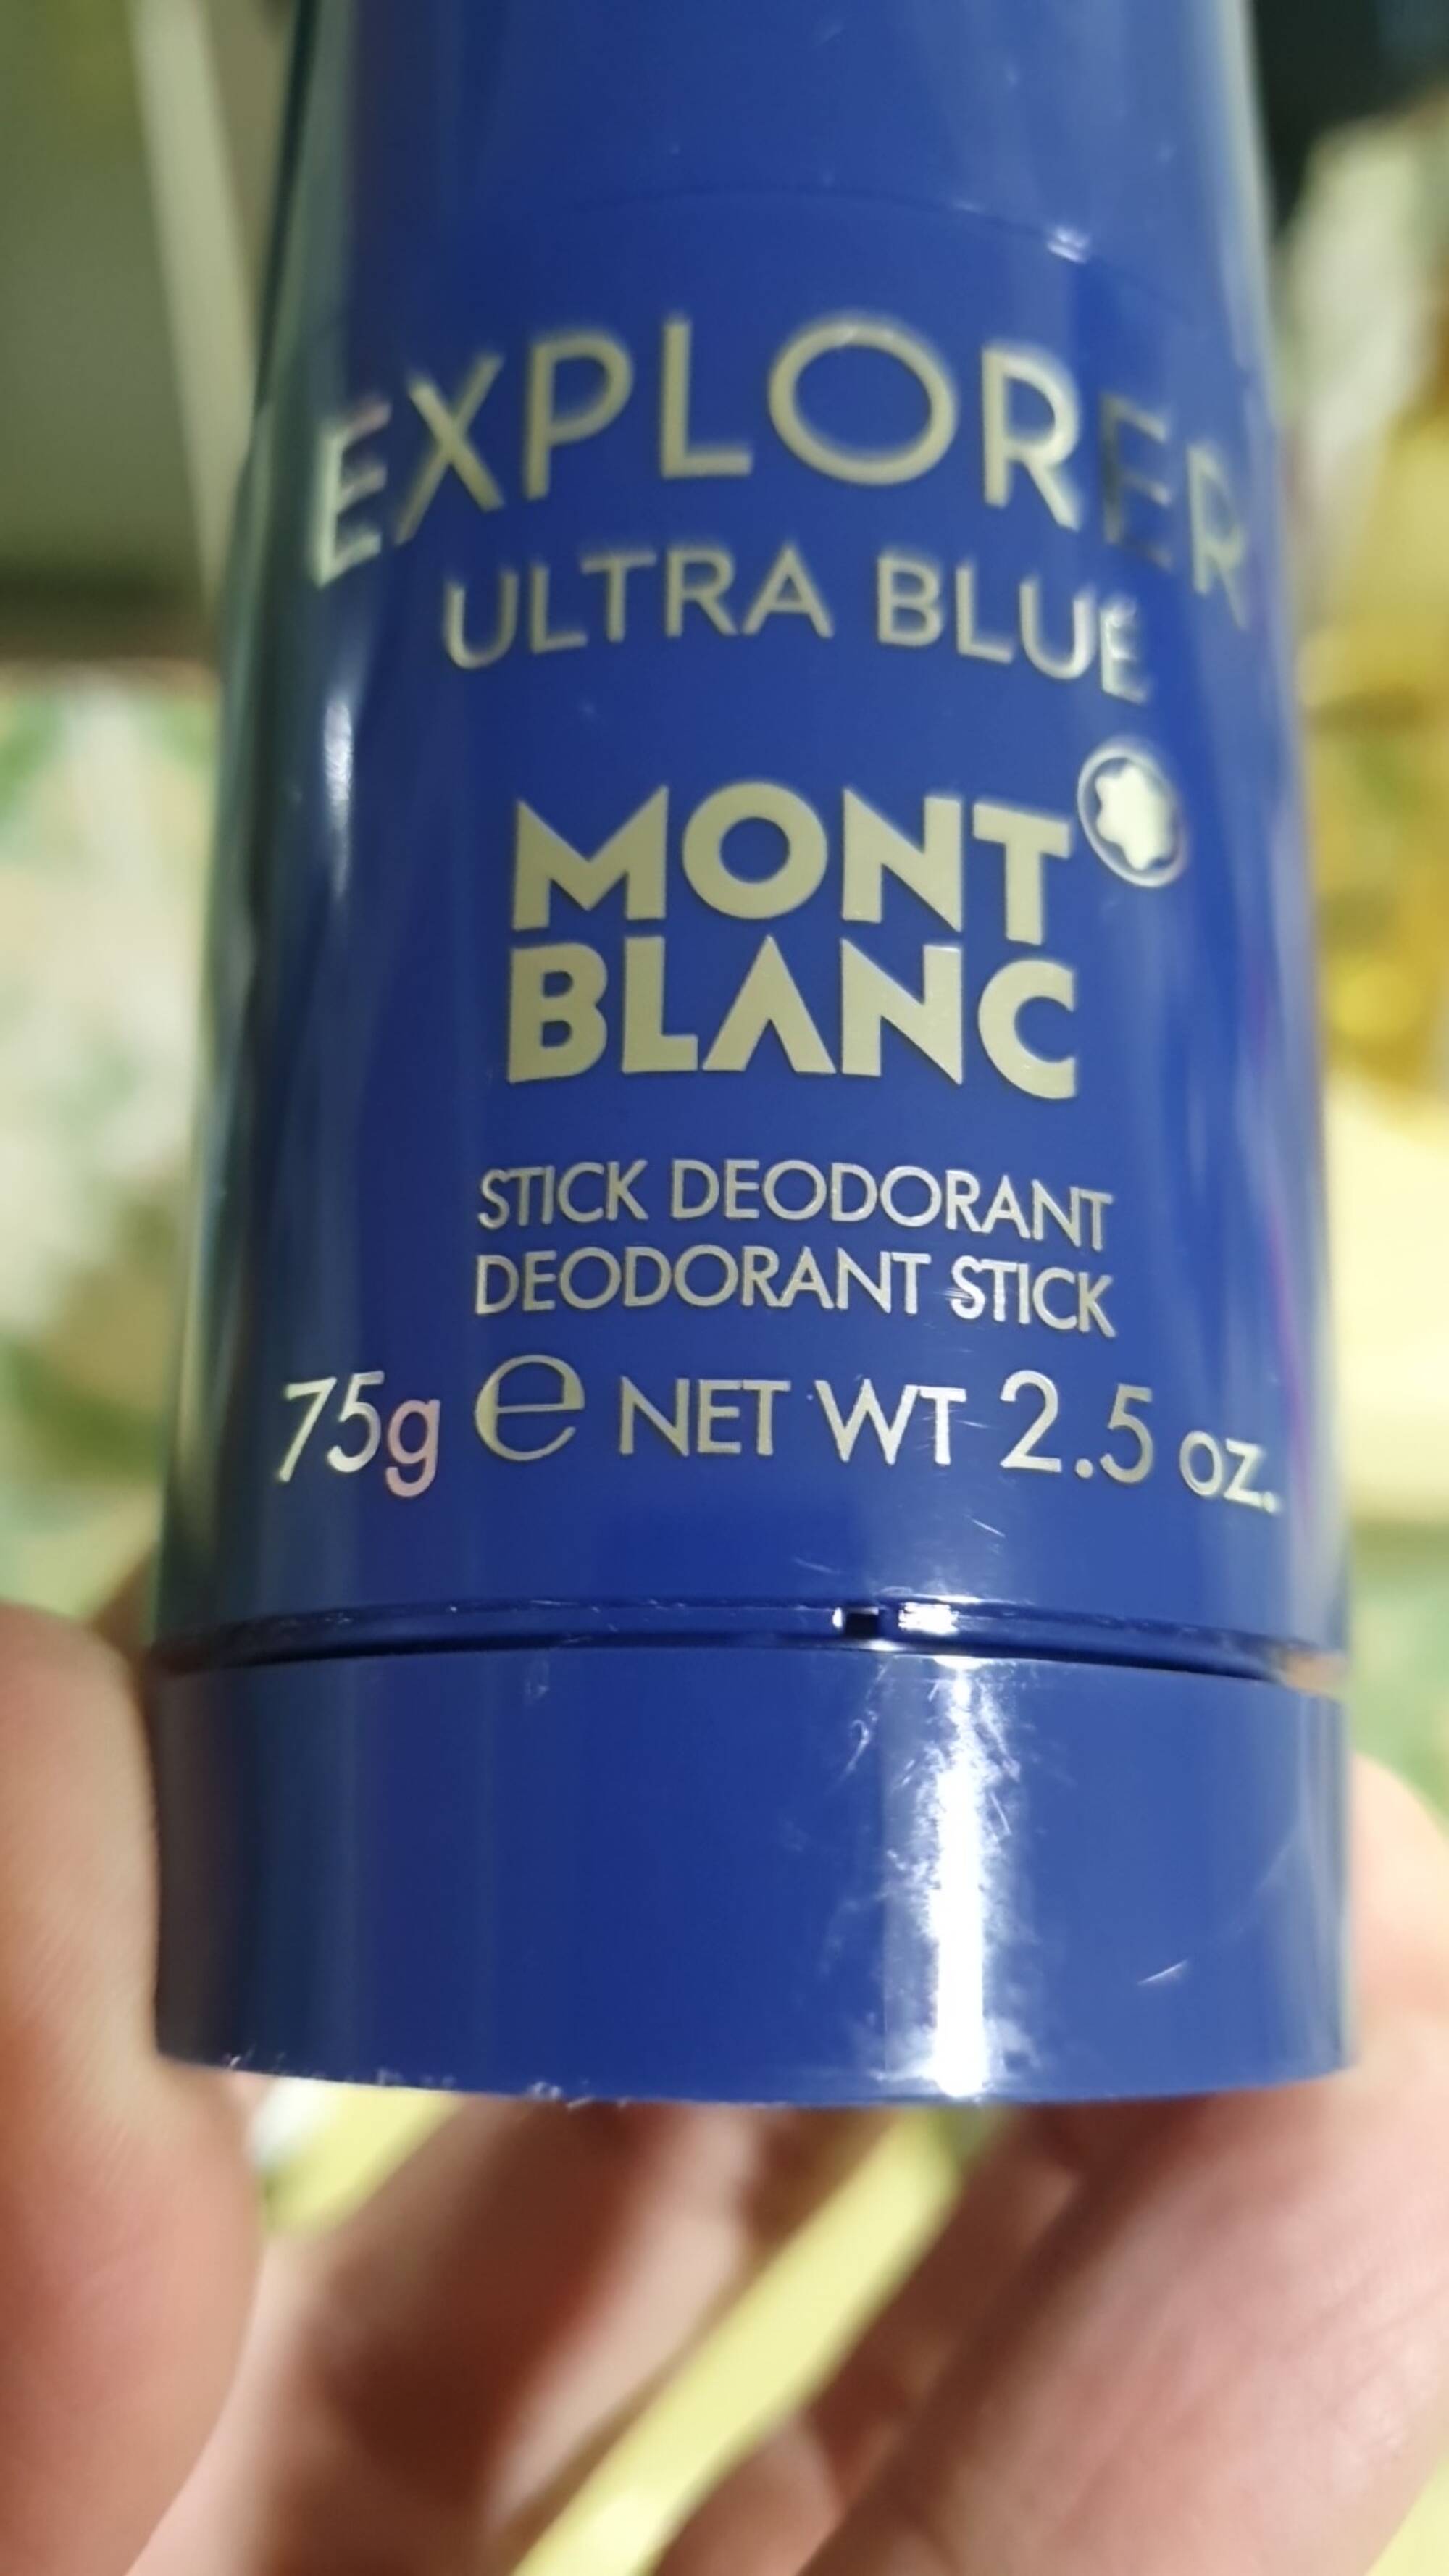 MONT BLANC - Explorer ultra blue - Déodorant stick